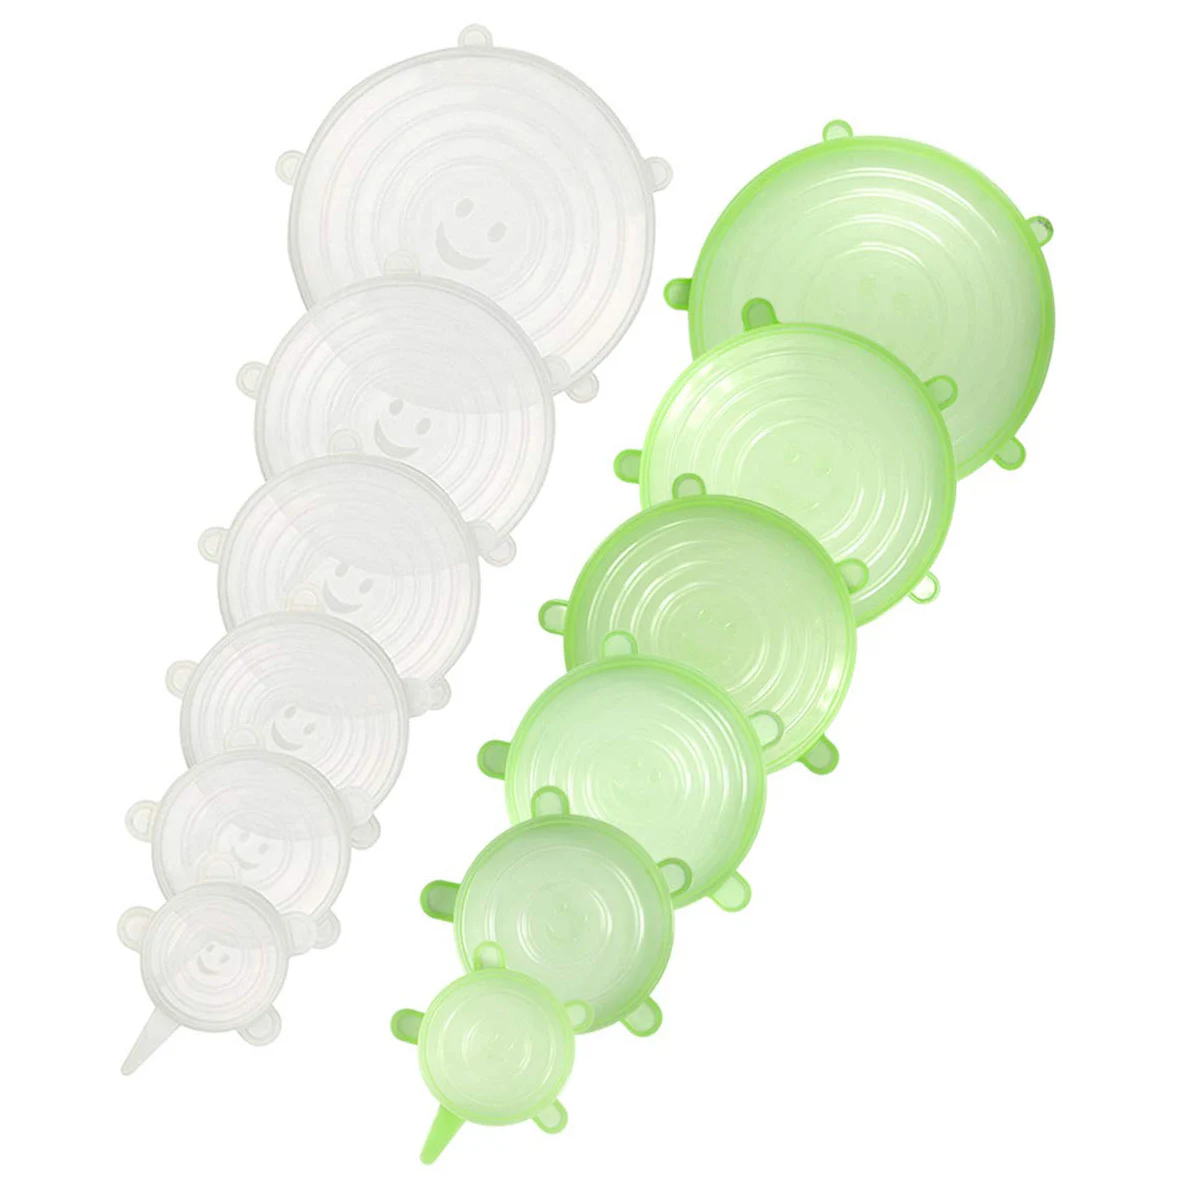 Мягкая силиконовая крышка 12 упаковок различных размеров гибкое многоразовое и прочное сохранение продуктов питания крышка для хранения свежих продуктов - Цвет: Green